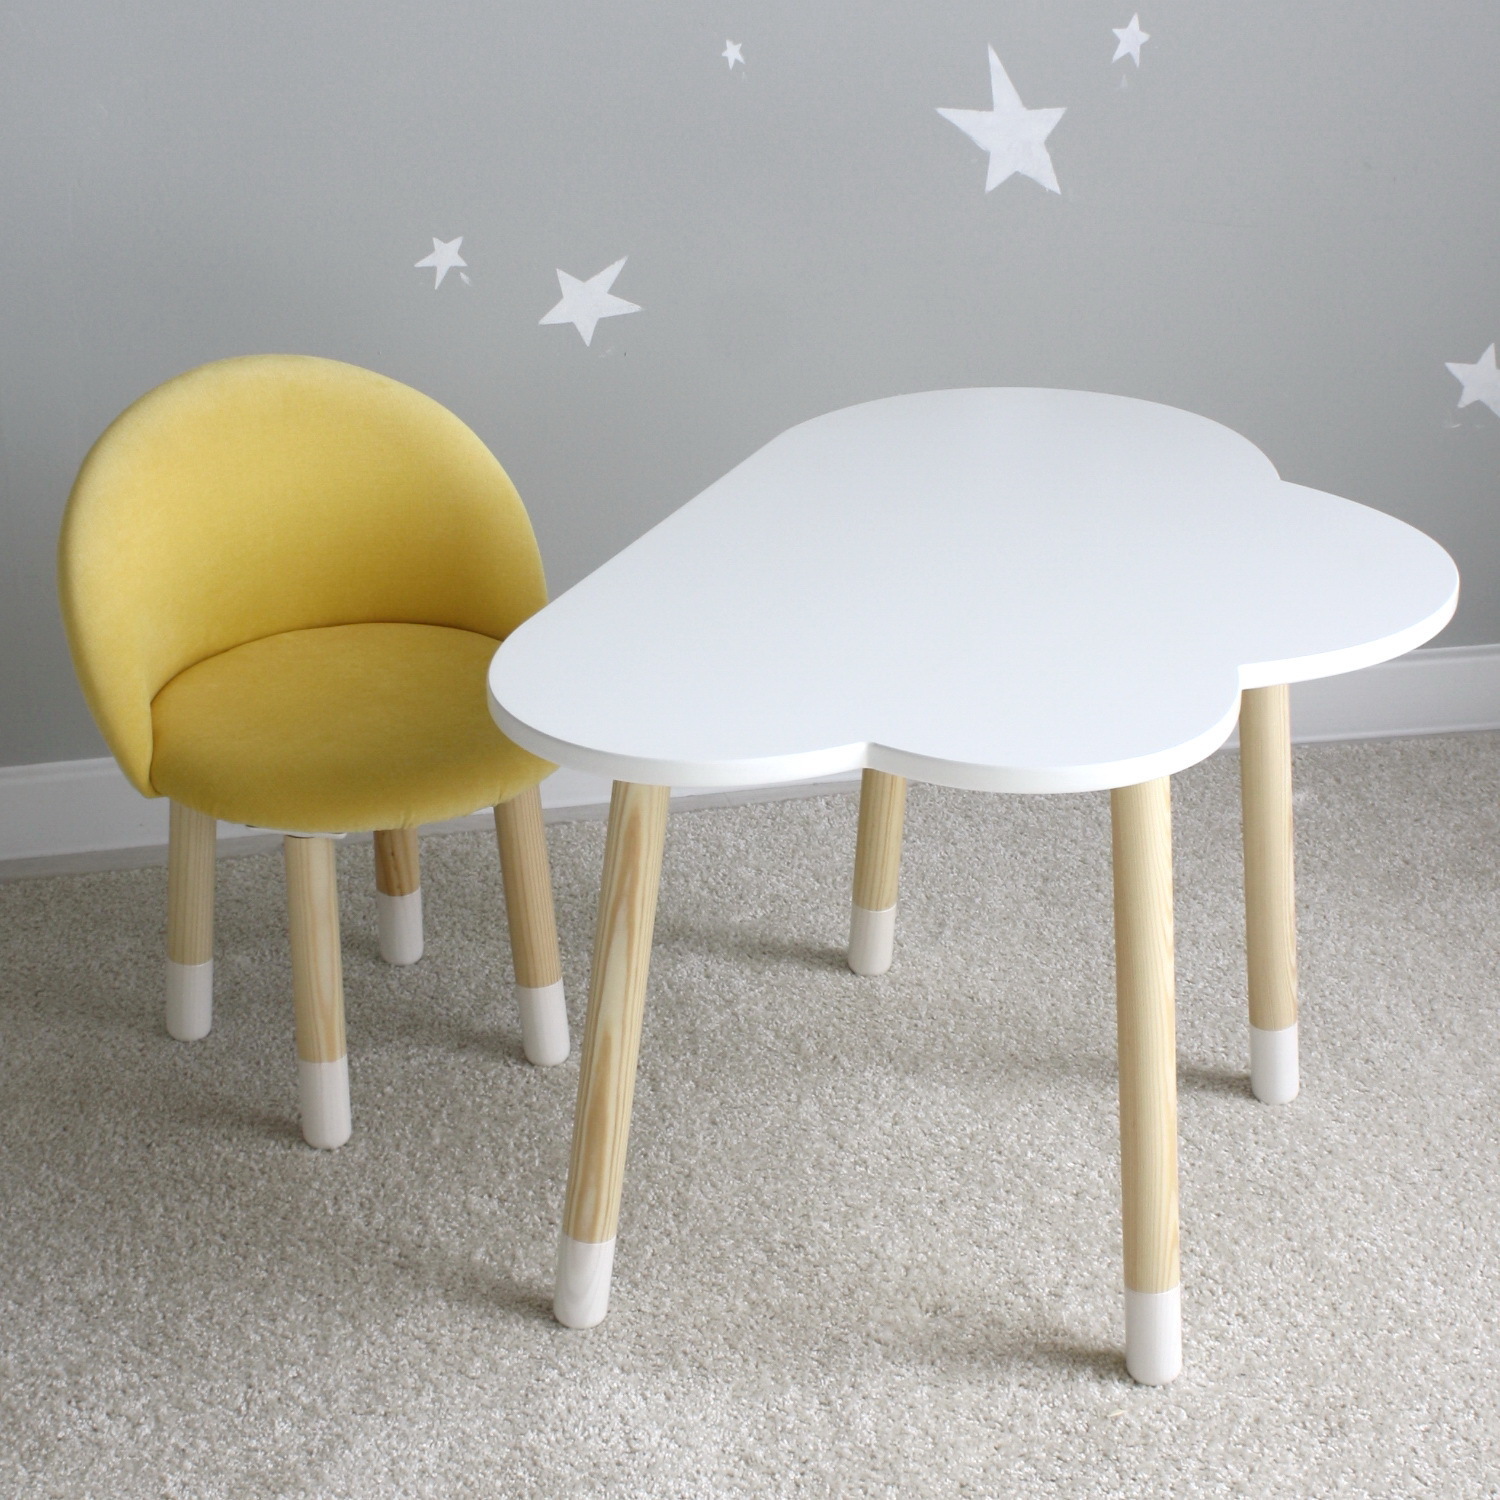 Комплект детской мебели DIMDOM kids Облако белый + Мягкий стульчик Желтый